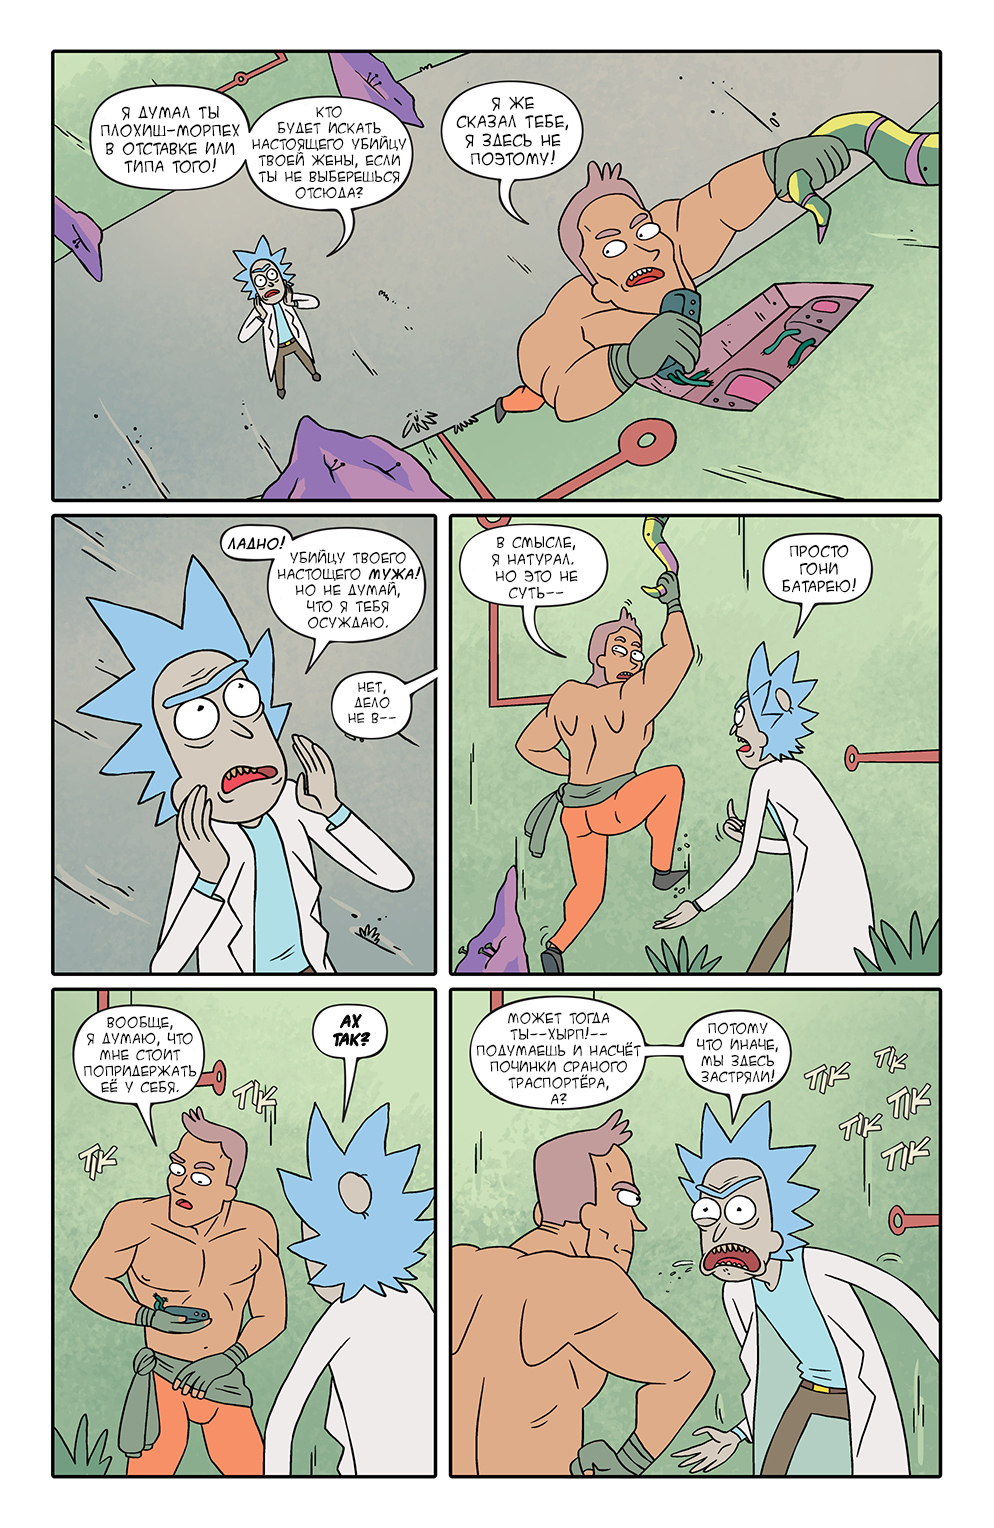 Rick and Morty #3 - Longpost, Rick and Morty, Translation, Comics, My